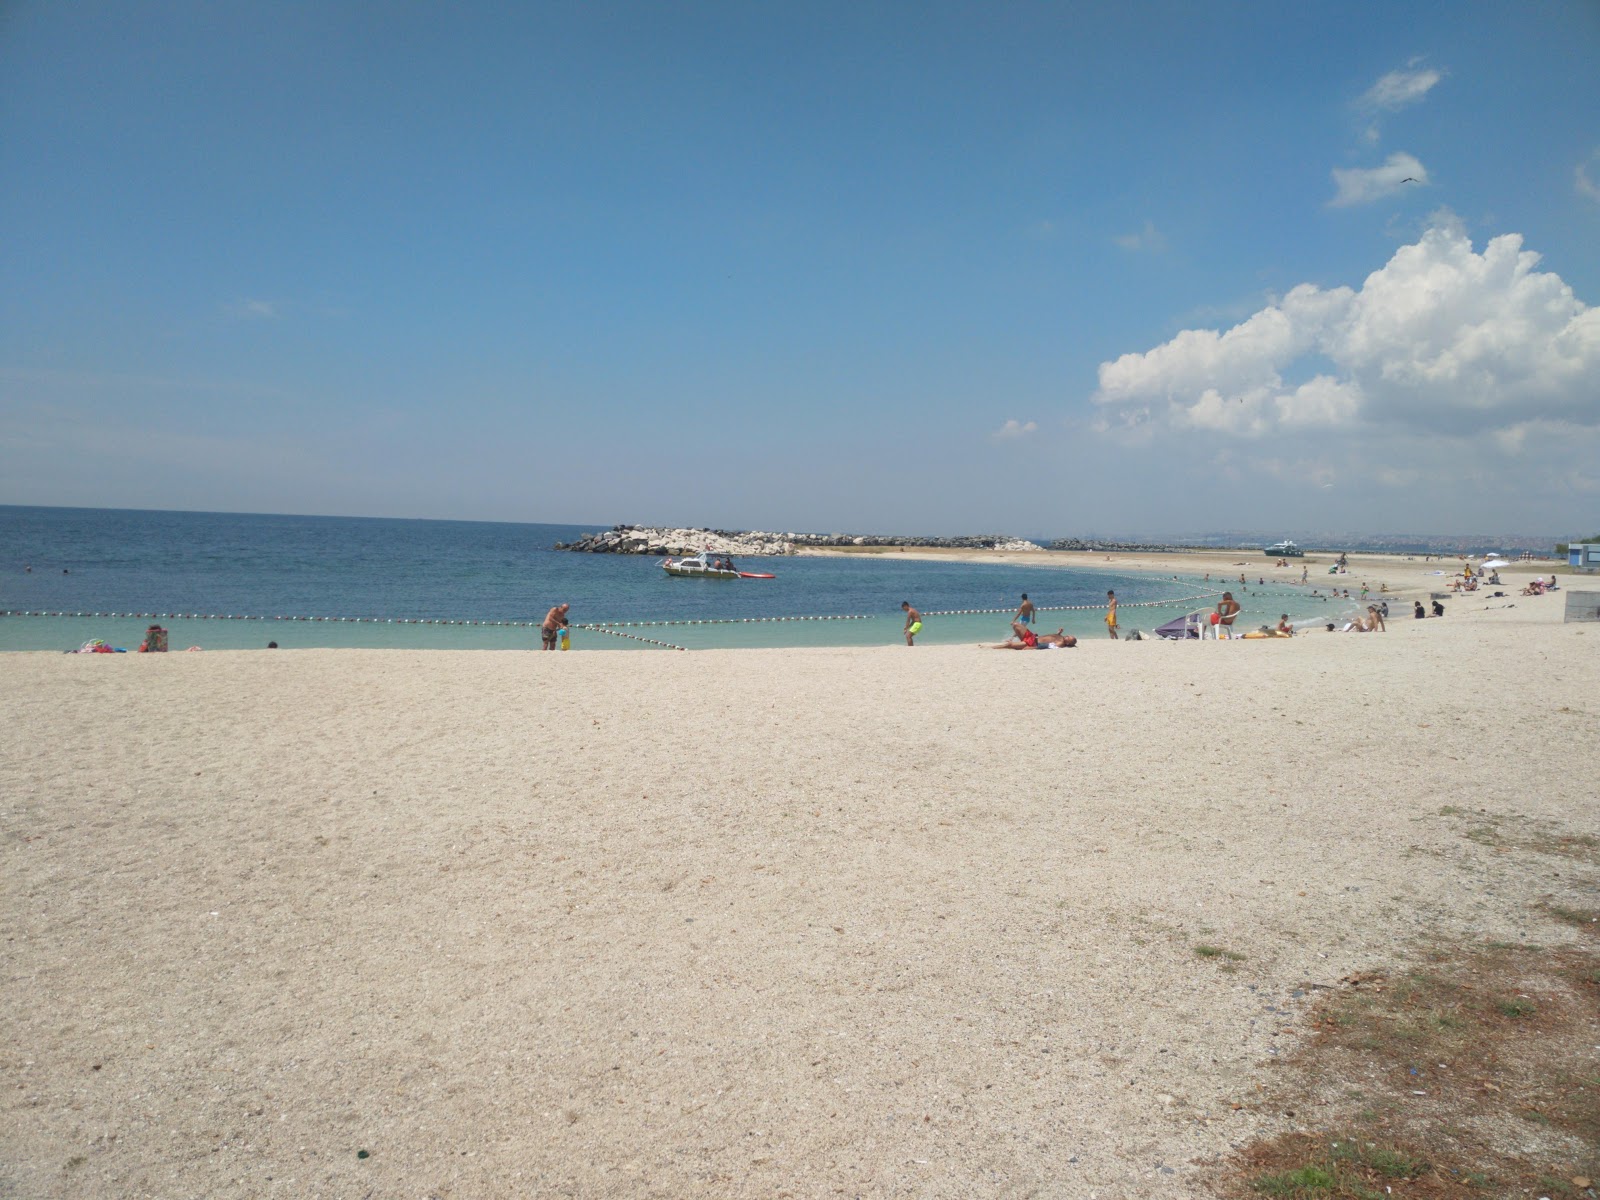 Zdjęcie Yesilkoy Ciroz beach z przestronna zatoka